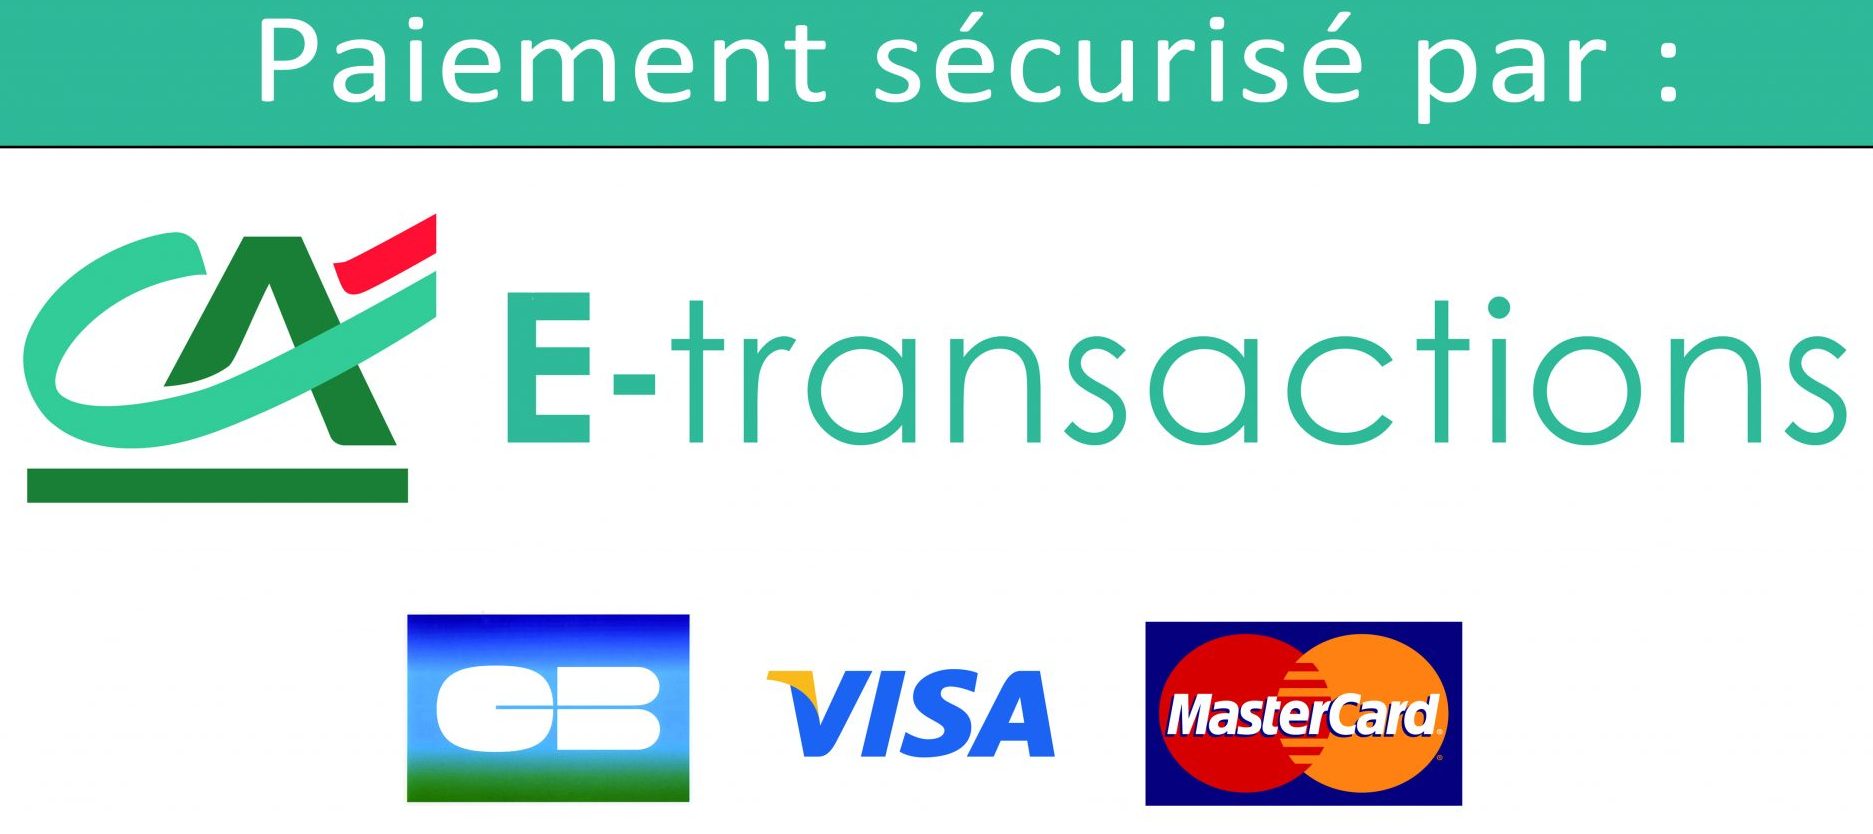 Paiement_Securise_par_E-transactions.jpg